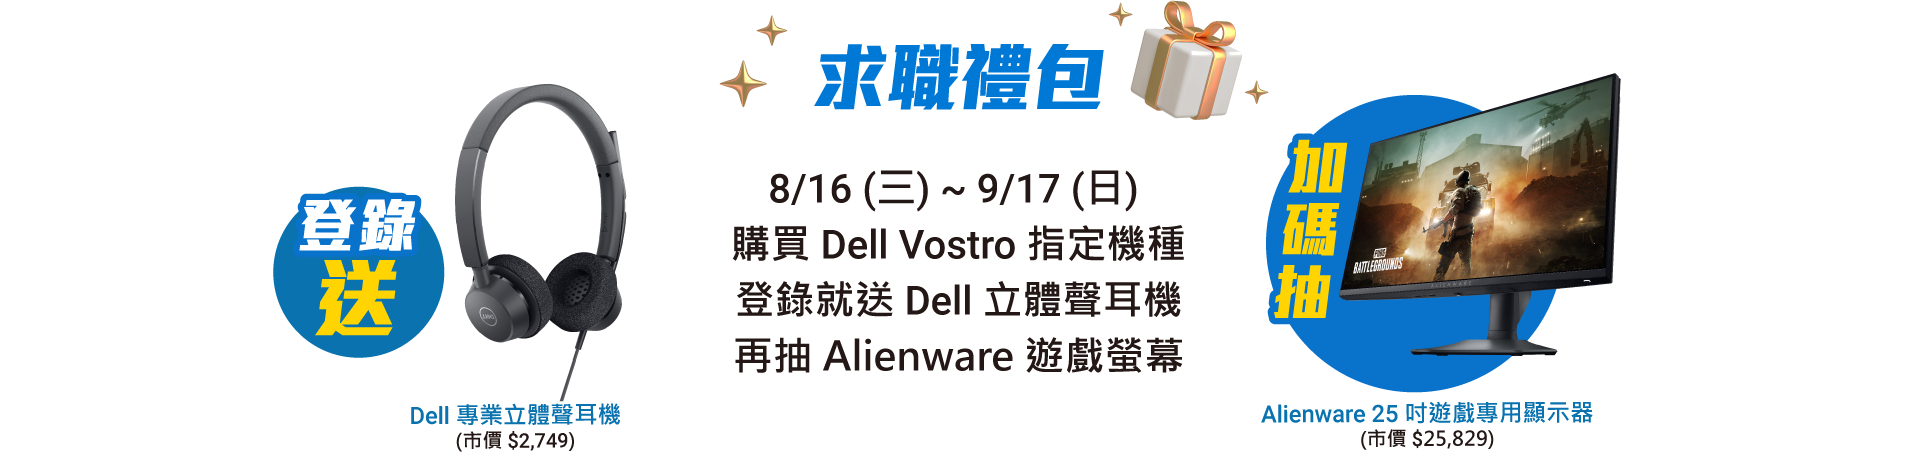 求職禮包 8/16(三) ~ 9/17(日)  購買 Dell Vostro 指定機種
                    登錄就送 六合一多連接埠轉接頭 再抽 Alienware 遊戲螢幕